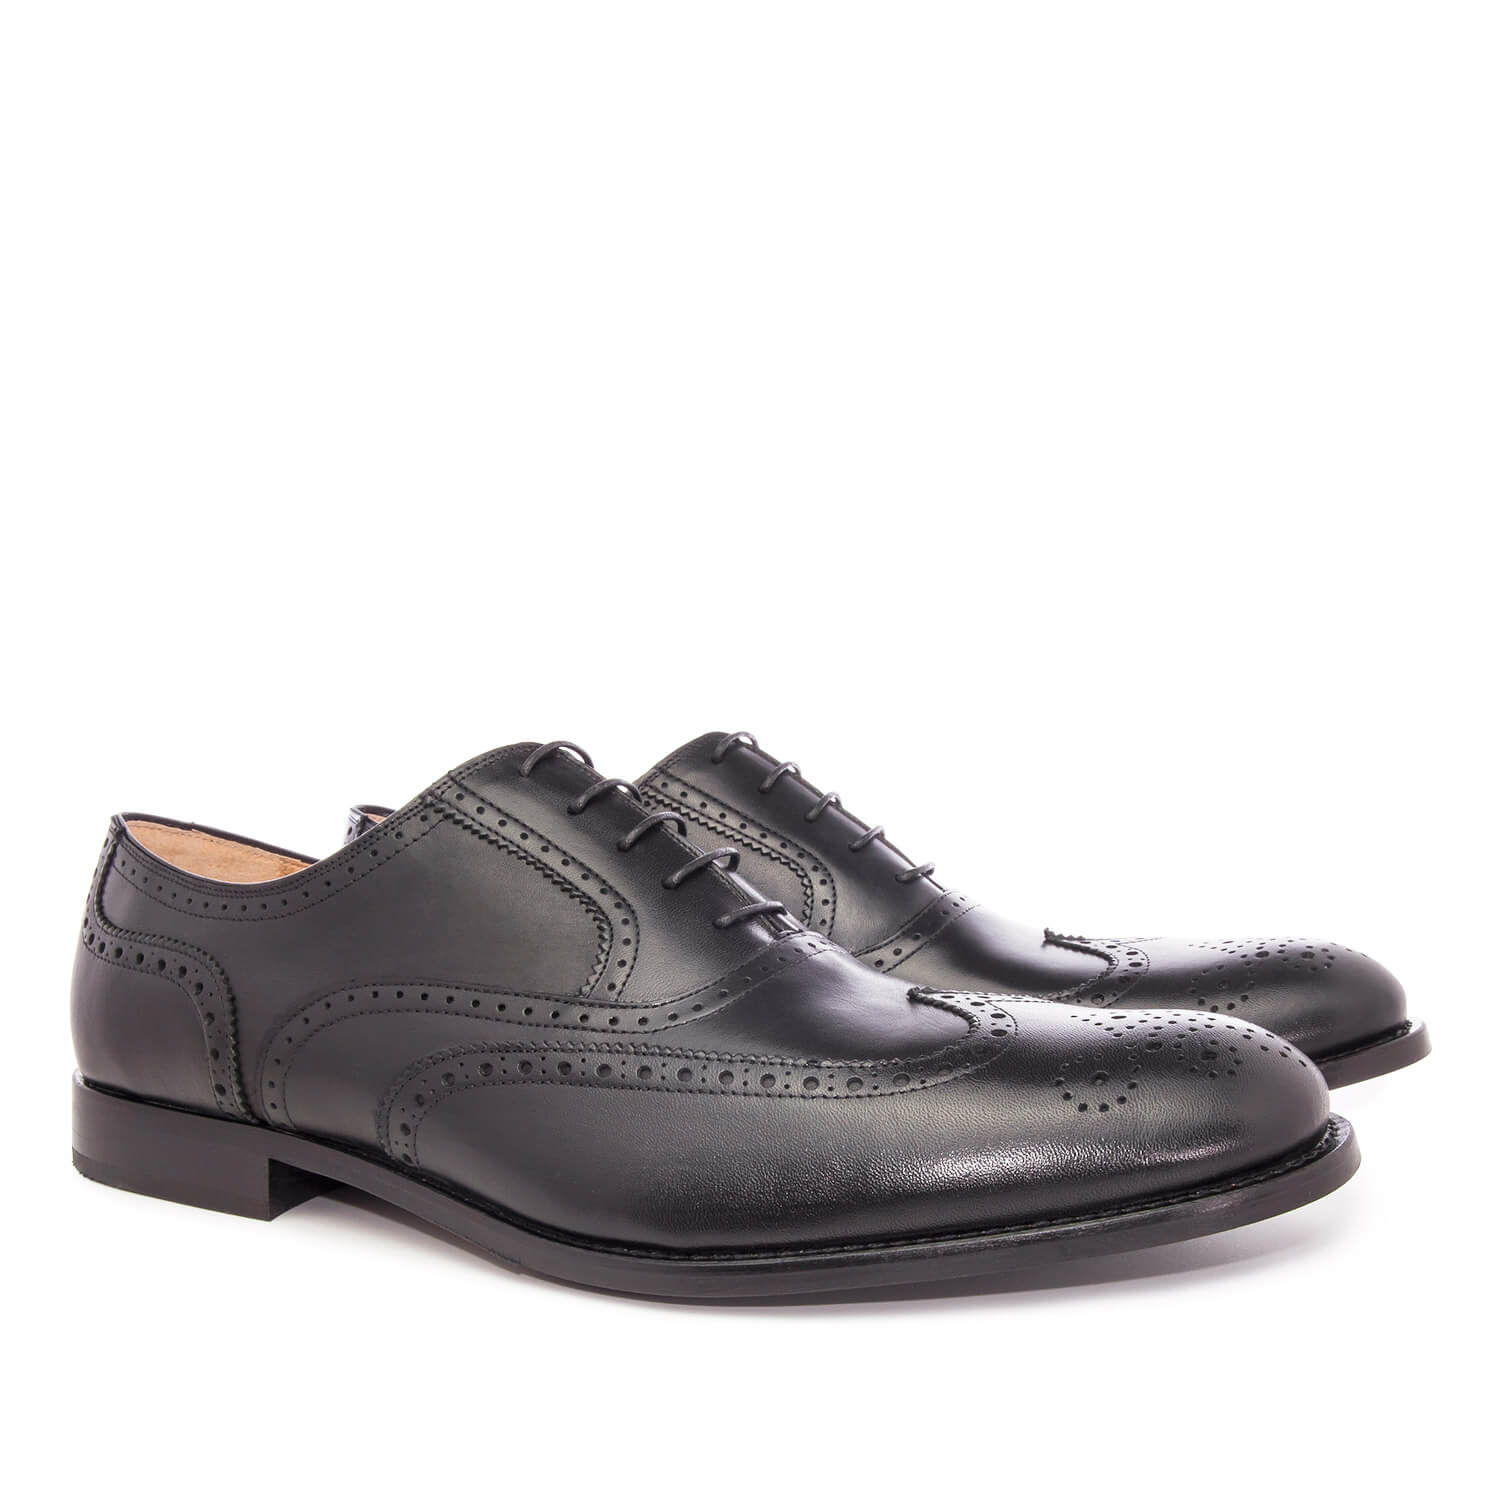 Zapato de Caballero estilo Oxford en Piel Negro 